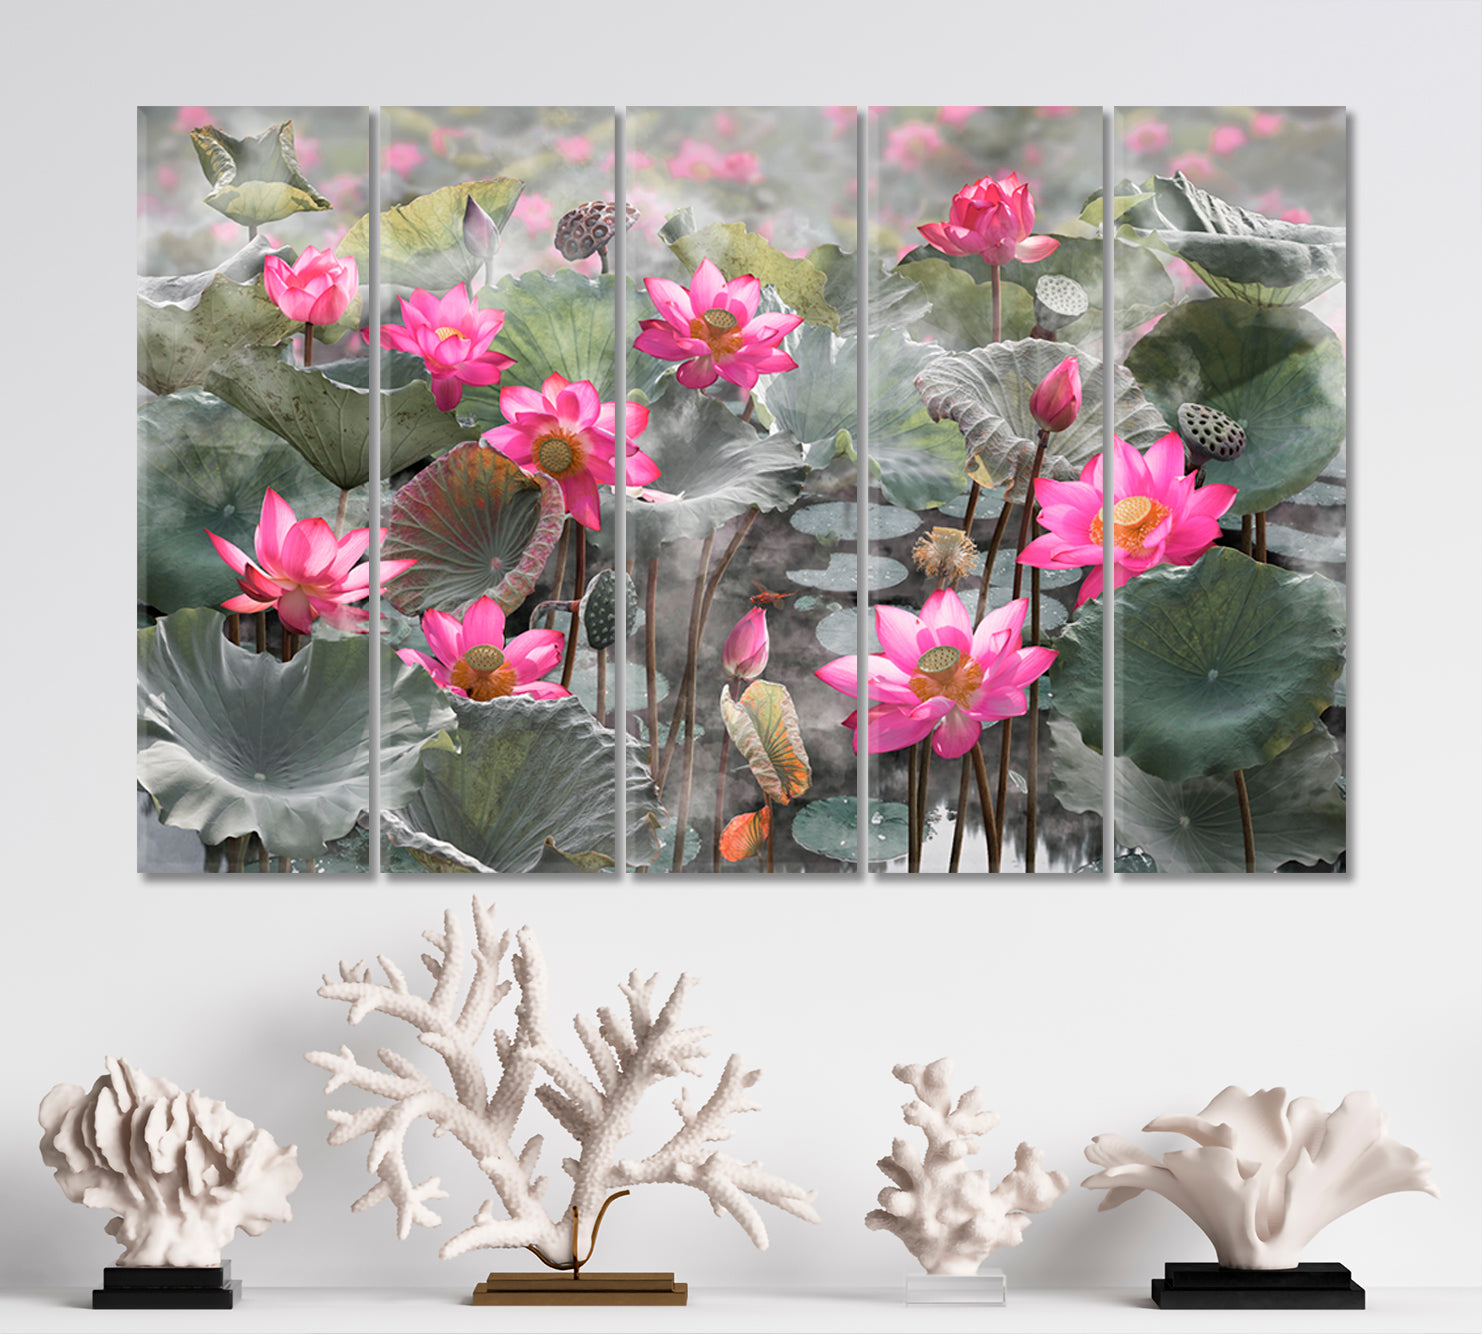 LOTUS POND Beautiful Pink Water Lily Blooming Lake Poster Floral & Botanical Split Art Artesty 5 panels 36" x 24" 